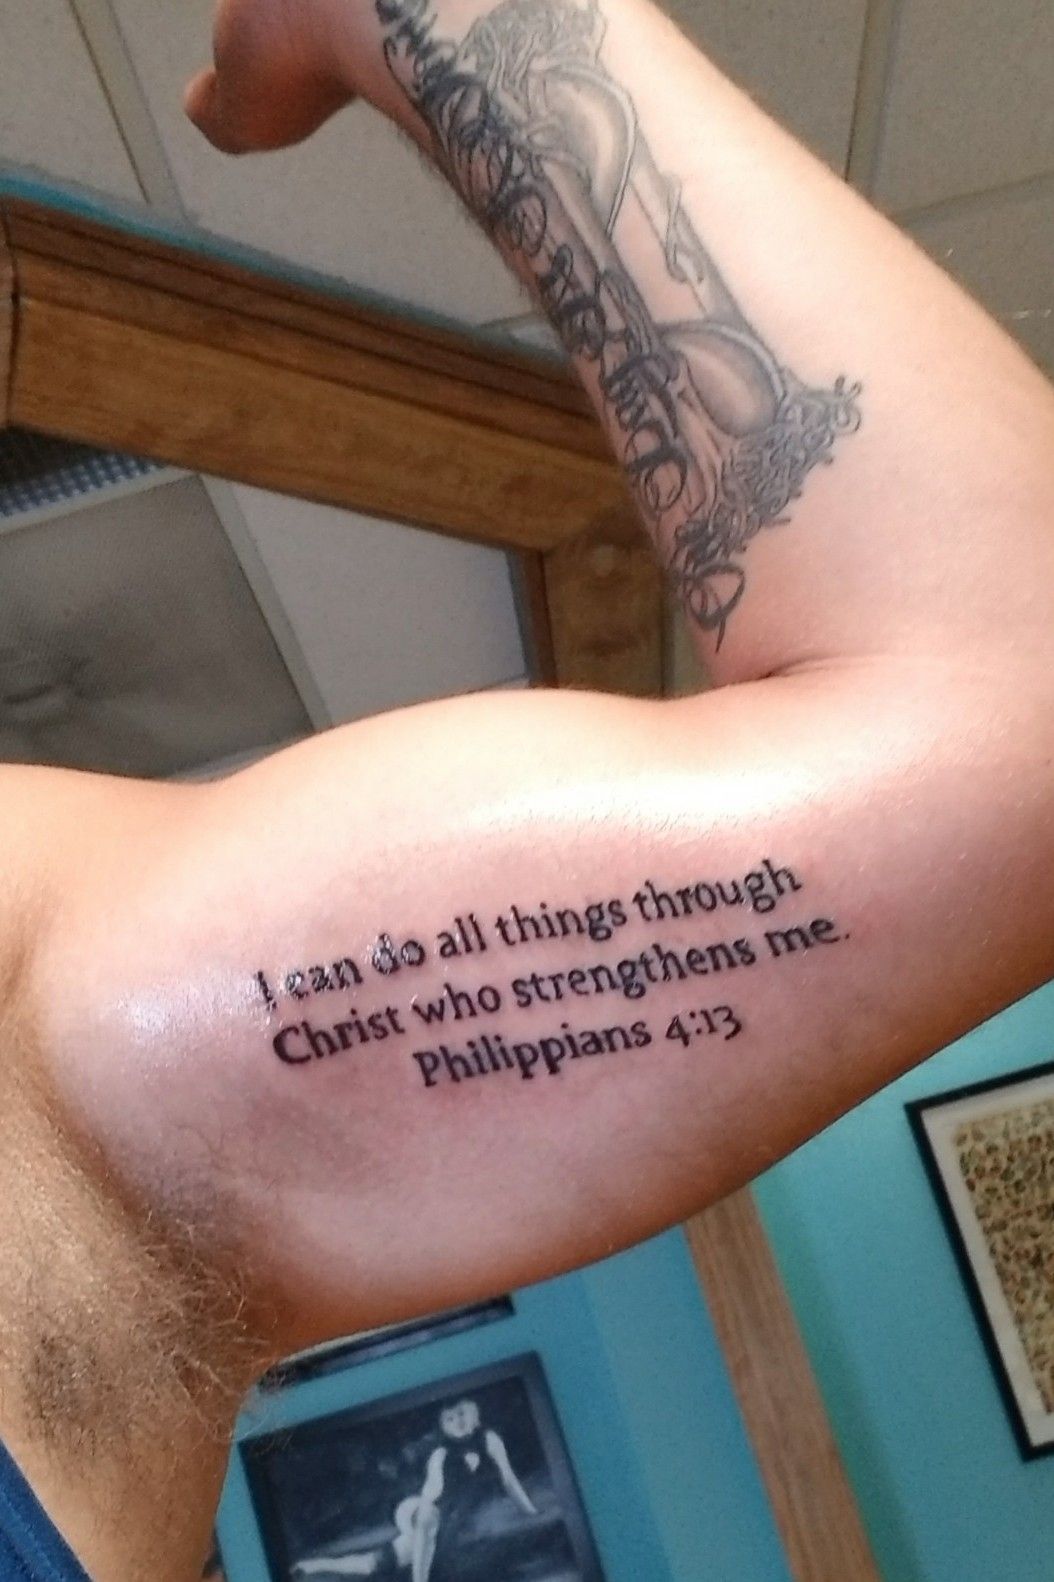 Tattoo uploaded by Mike Hagedorn • Philippians 4:13 tattoo • Tattoodo